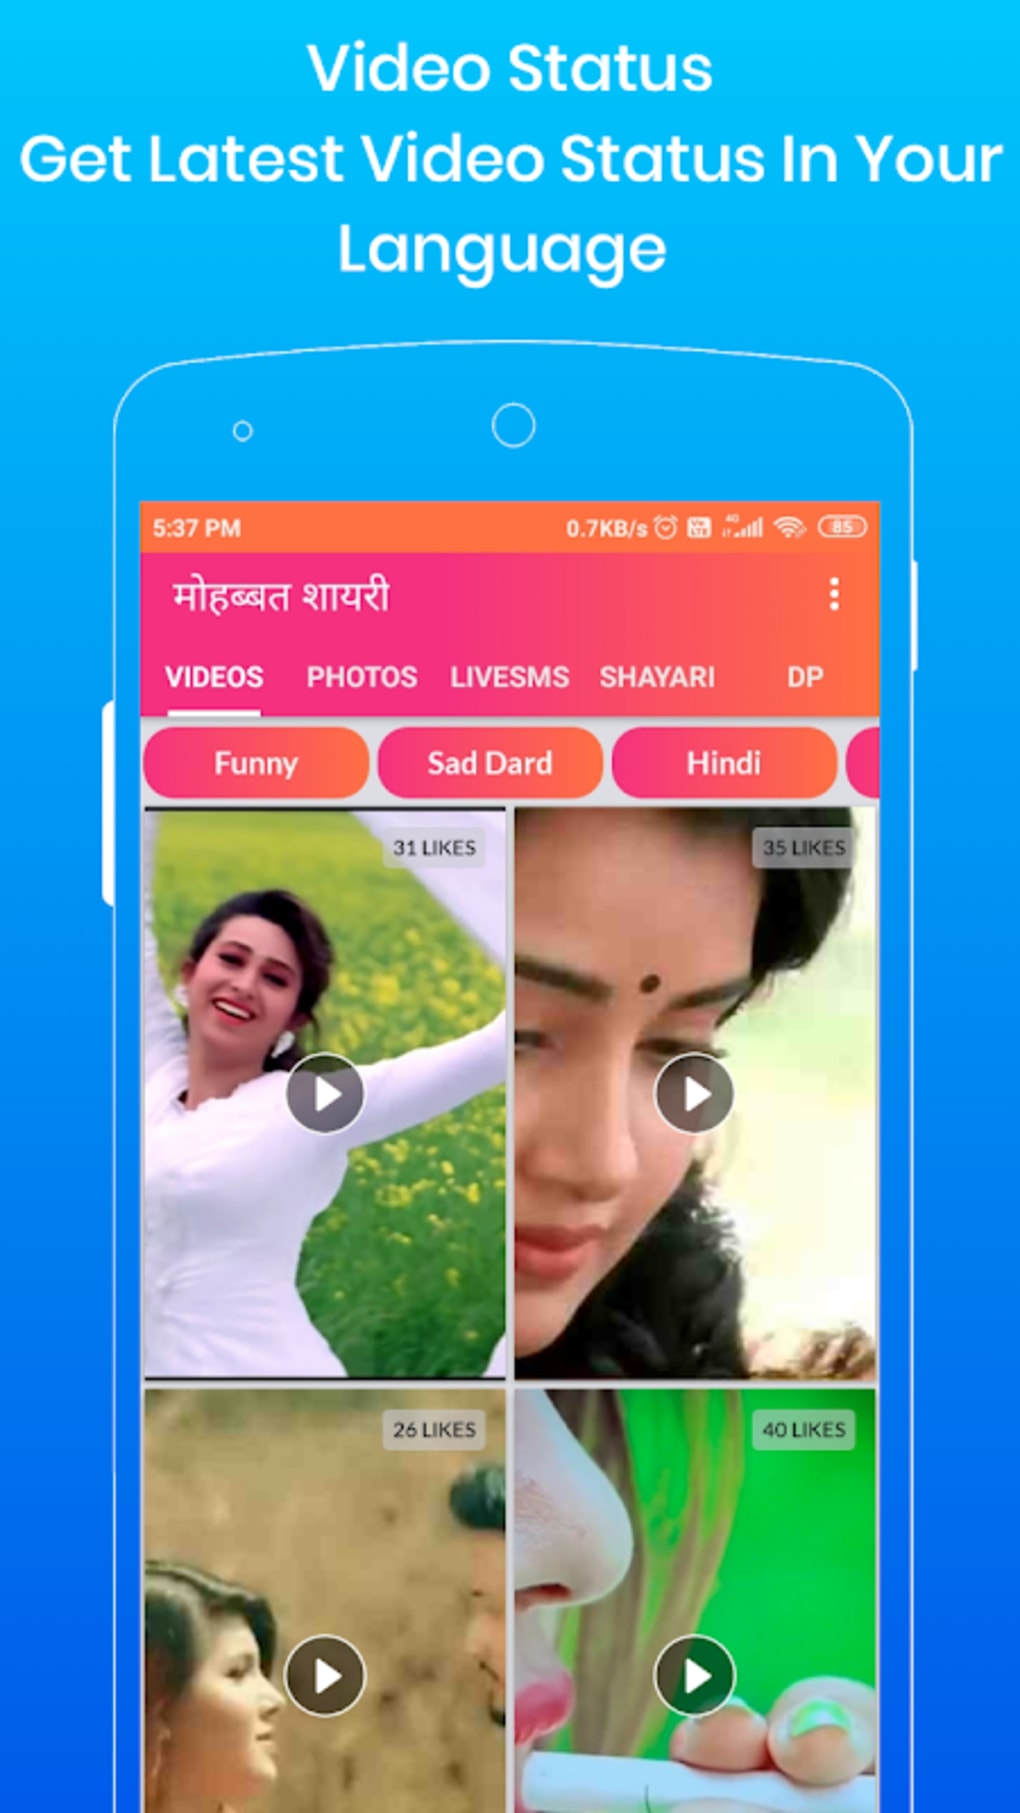 VidApp - Video Status, Hindi Shayari, Sad Dp, love for Android - Download